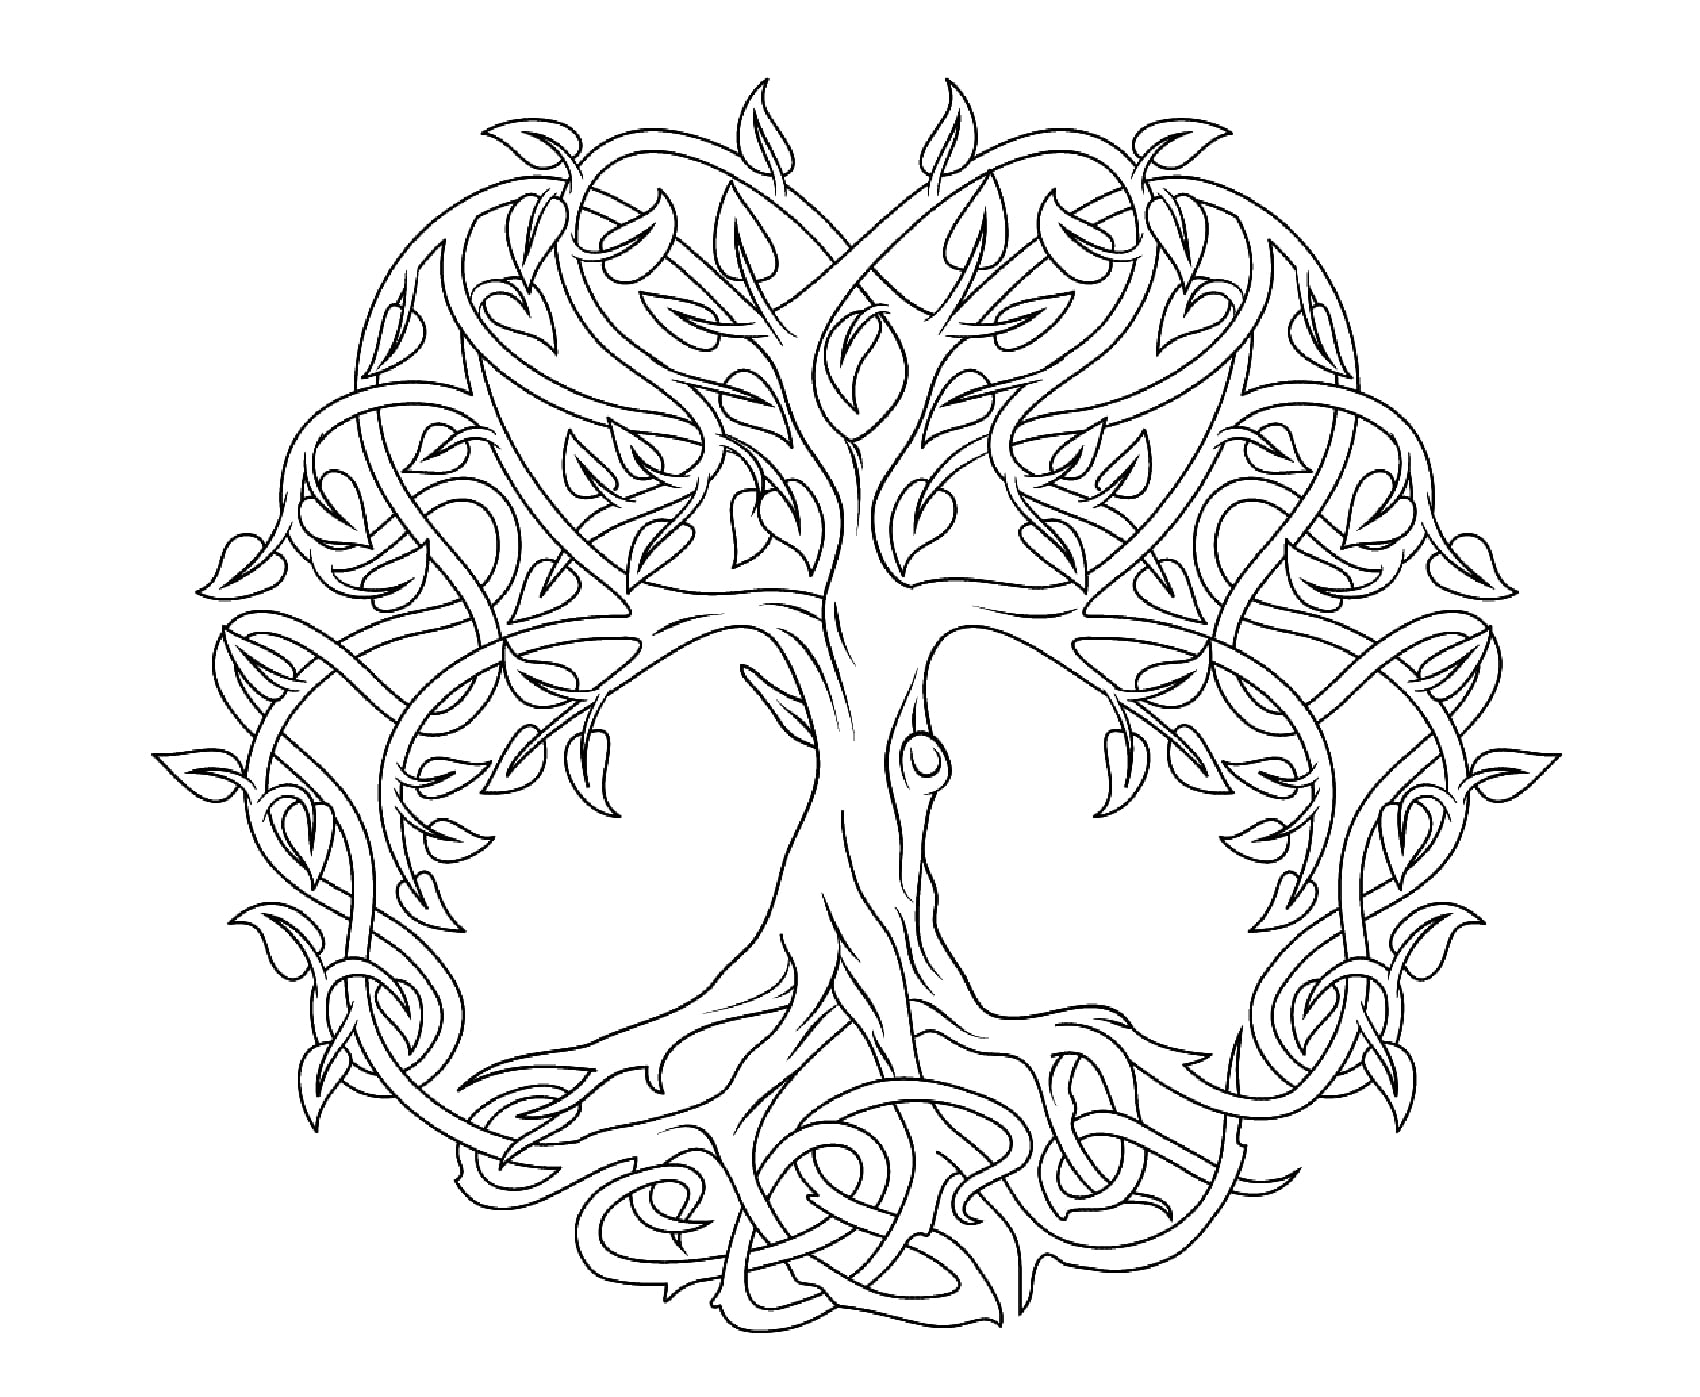 Árvore da vida para colorir. A Árvore da Vida celta representa o conceito de convergência das forças da natureza para criar harmonia. Estas árvores eram tão grandes e extensas que, com os seus ramos, podiam formar uma floresta inteira.